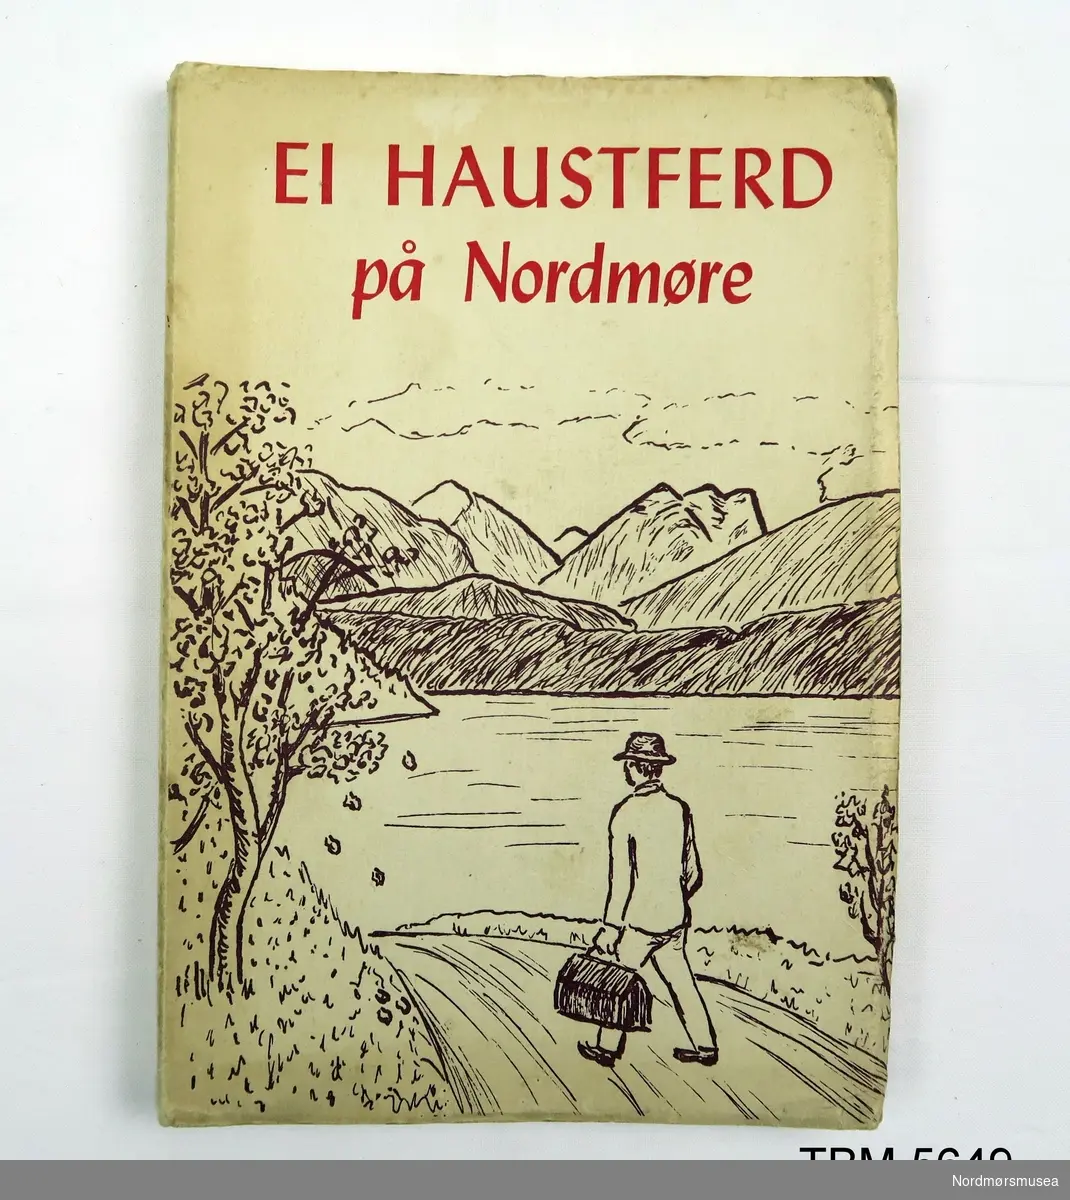 Bok med mjuk perm.På framsida er det bilete av ein mann på vandring i Nordmørsnatur.
Dedikasjon frå Hans Hyldbakk til Erik og Magnhild Almhjell, 1955.
173 sider.